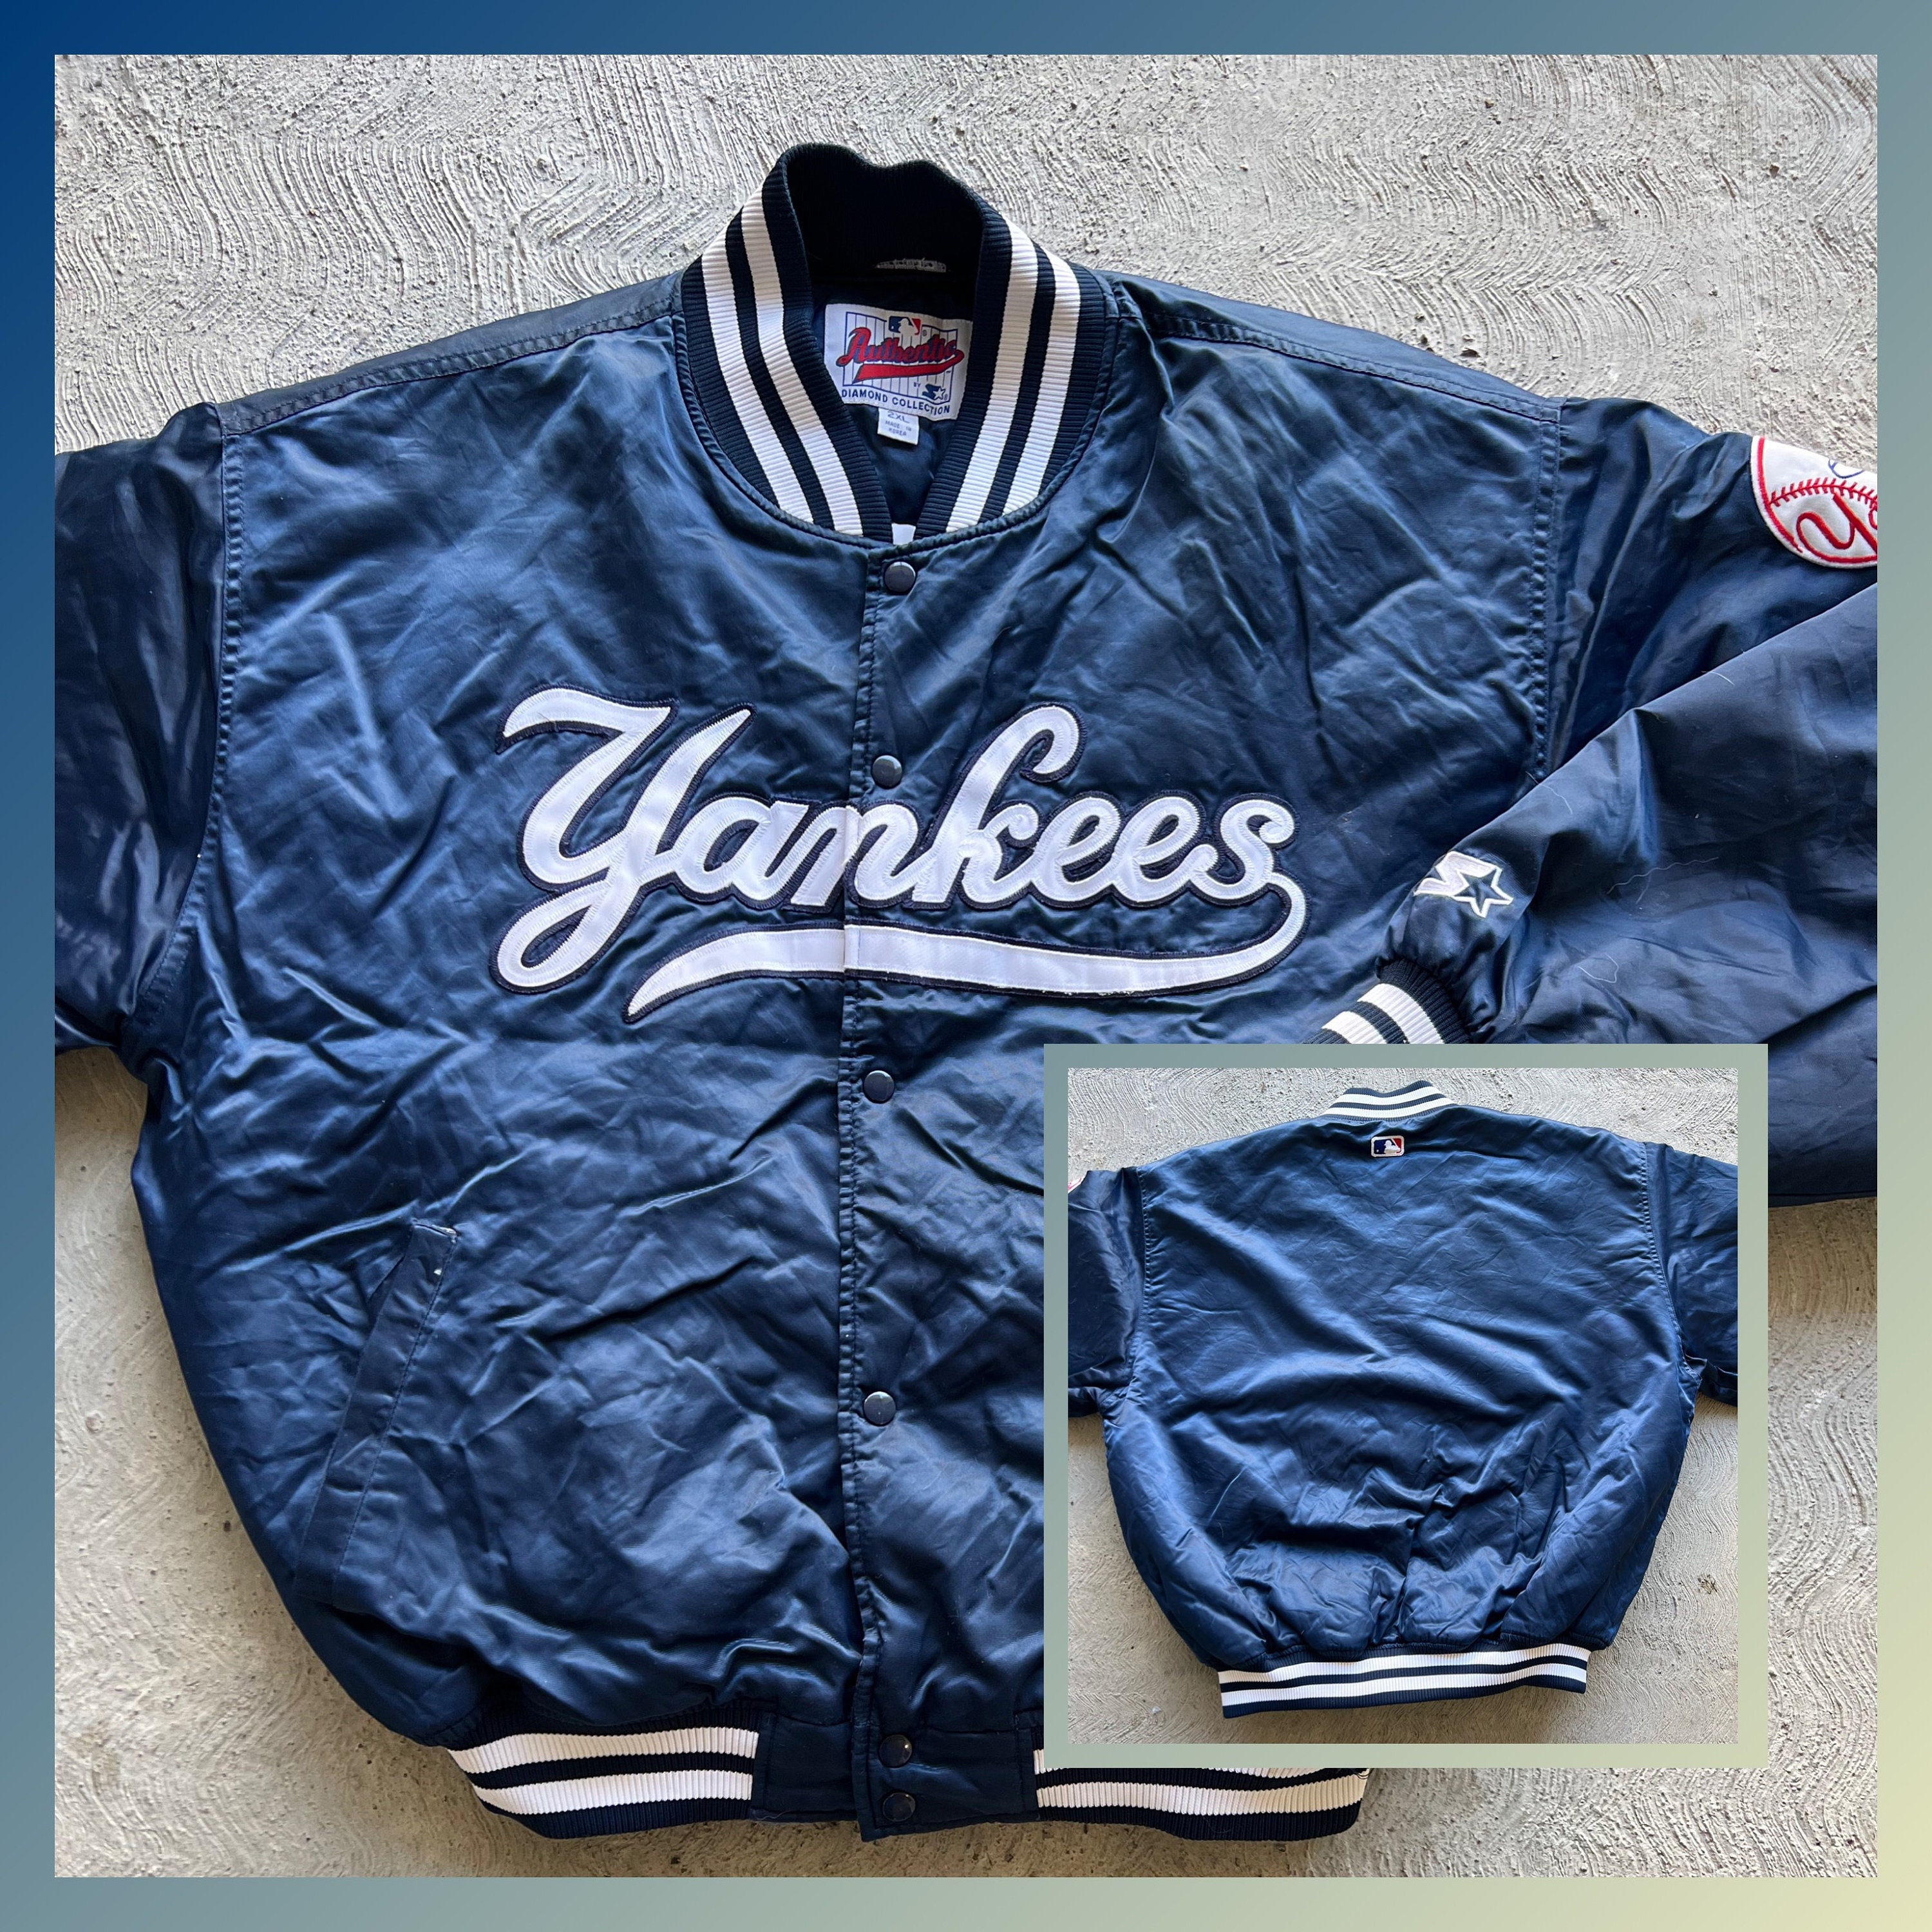 Vintage 90's Starter New York Yankees / Baby Blue / Nylon 